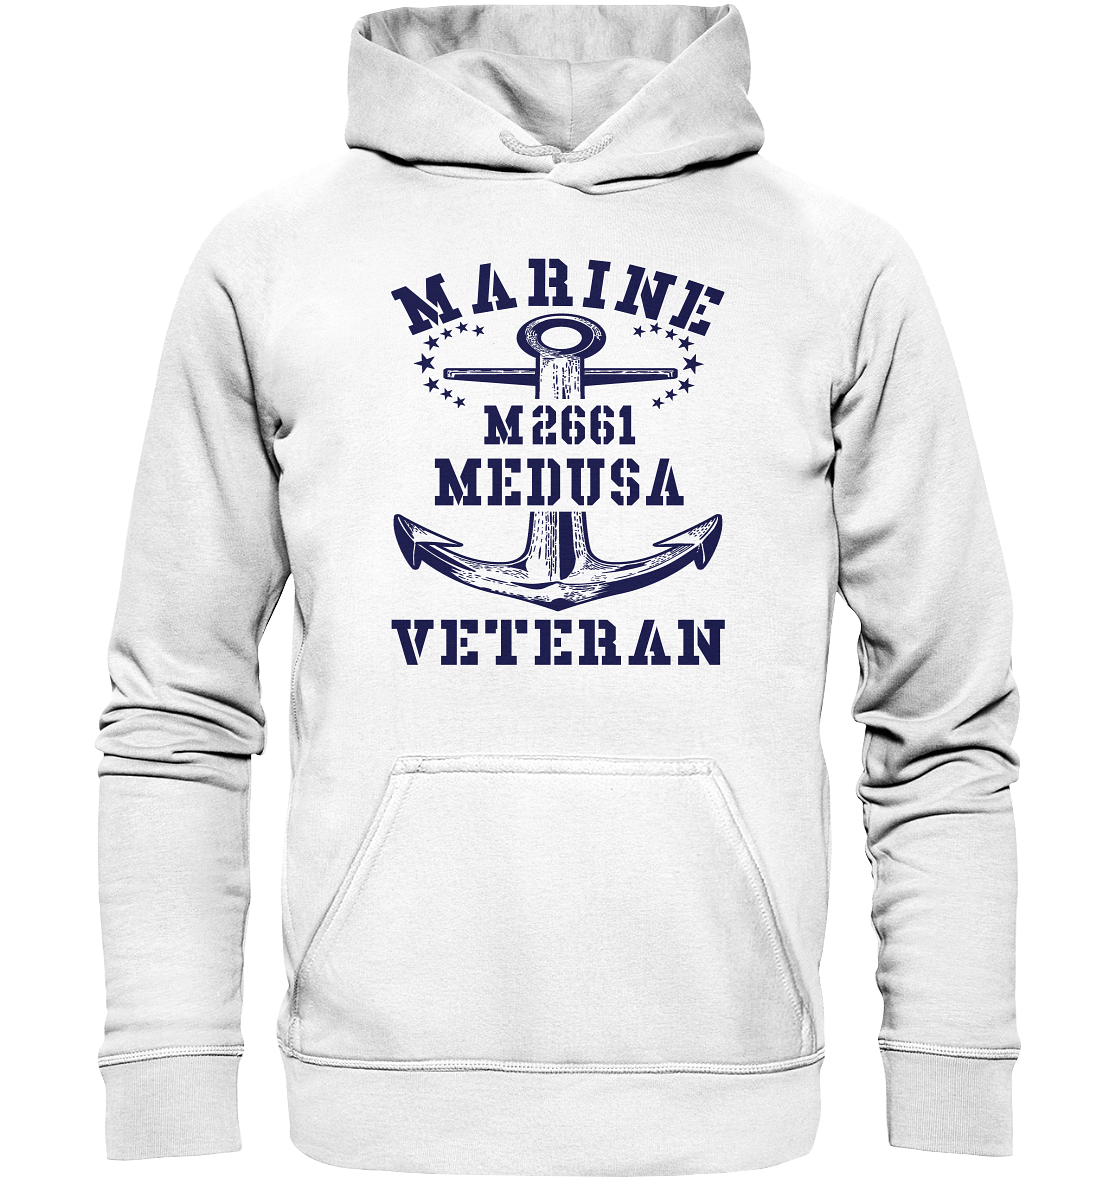 BiMi M2661 MEDUSA Marine Veteran - Basic Unisex Hoodie